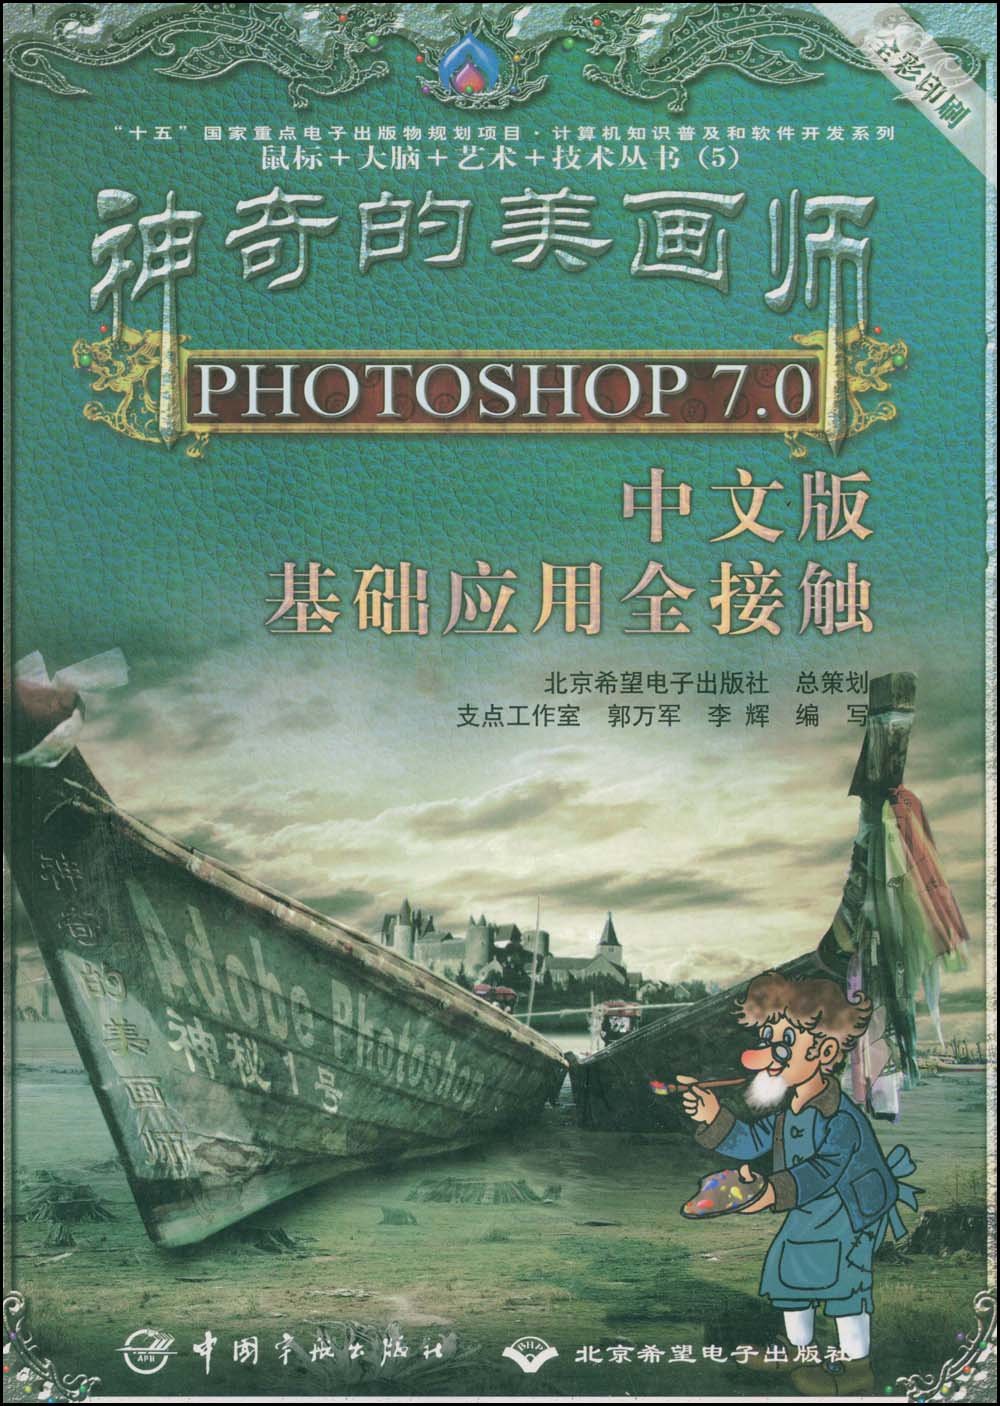 神奇的美畫師--中文版PHOTOSHOP 7.0 中文版基礎套用全接觸